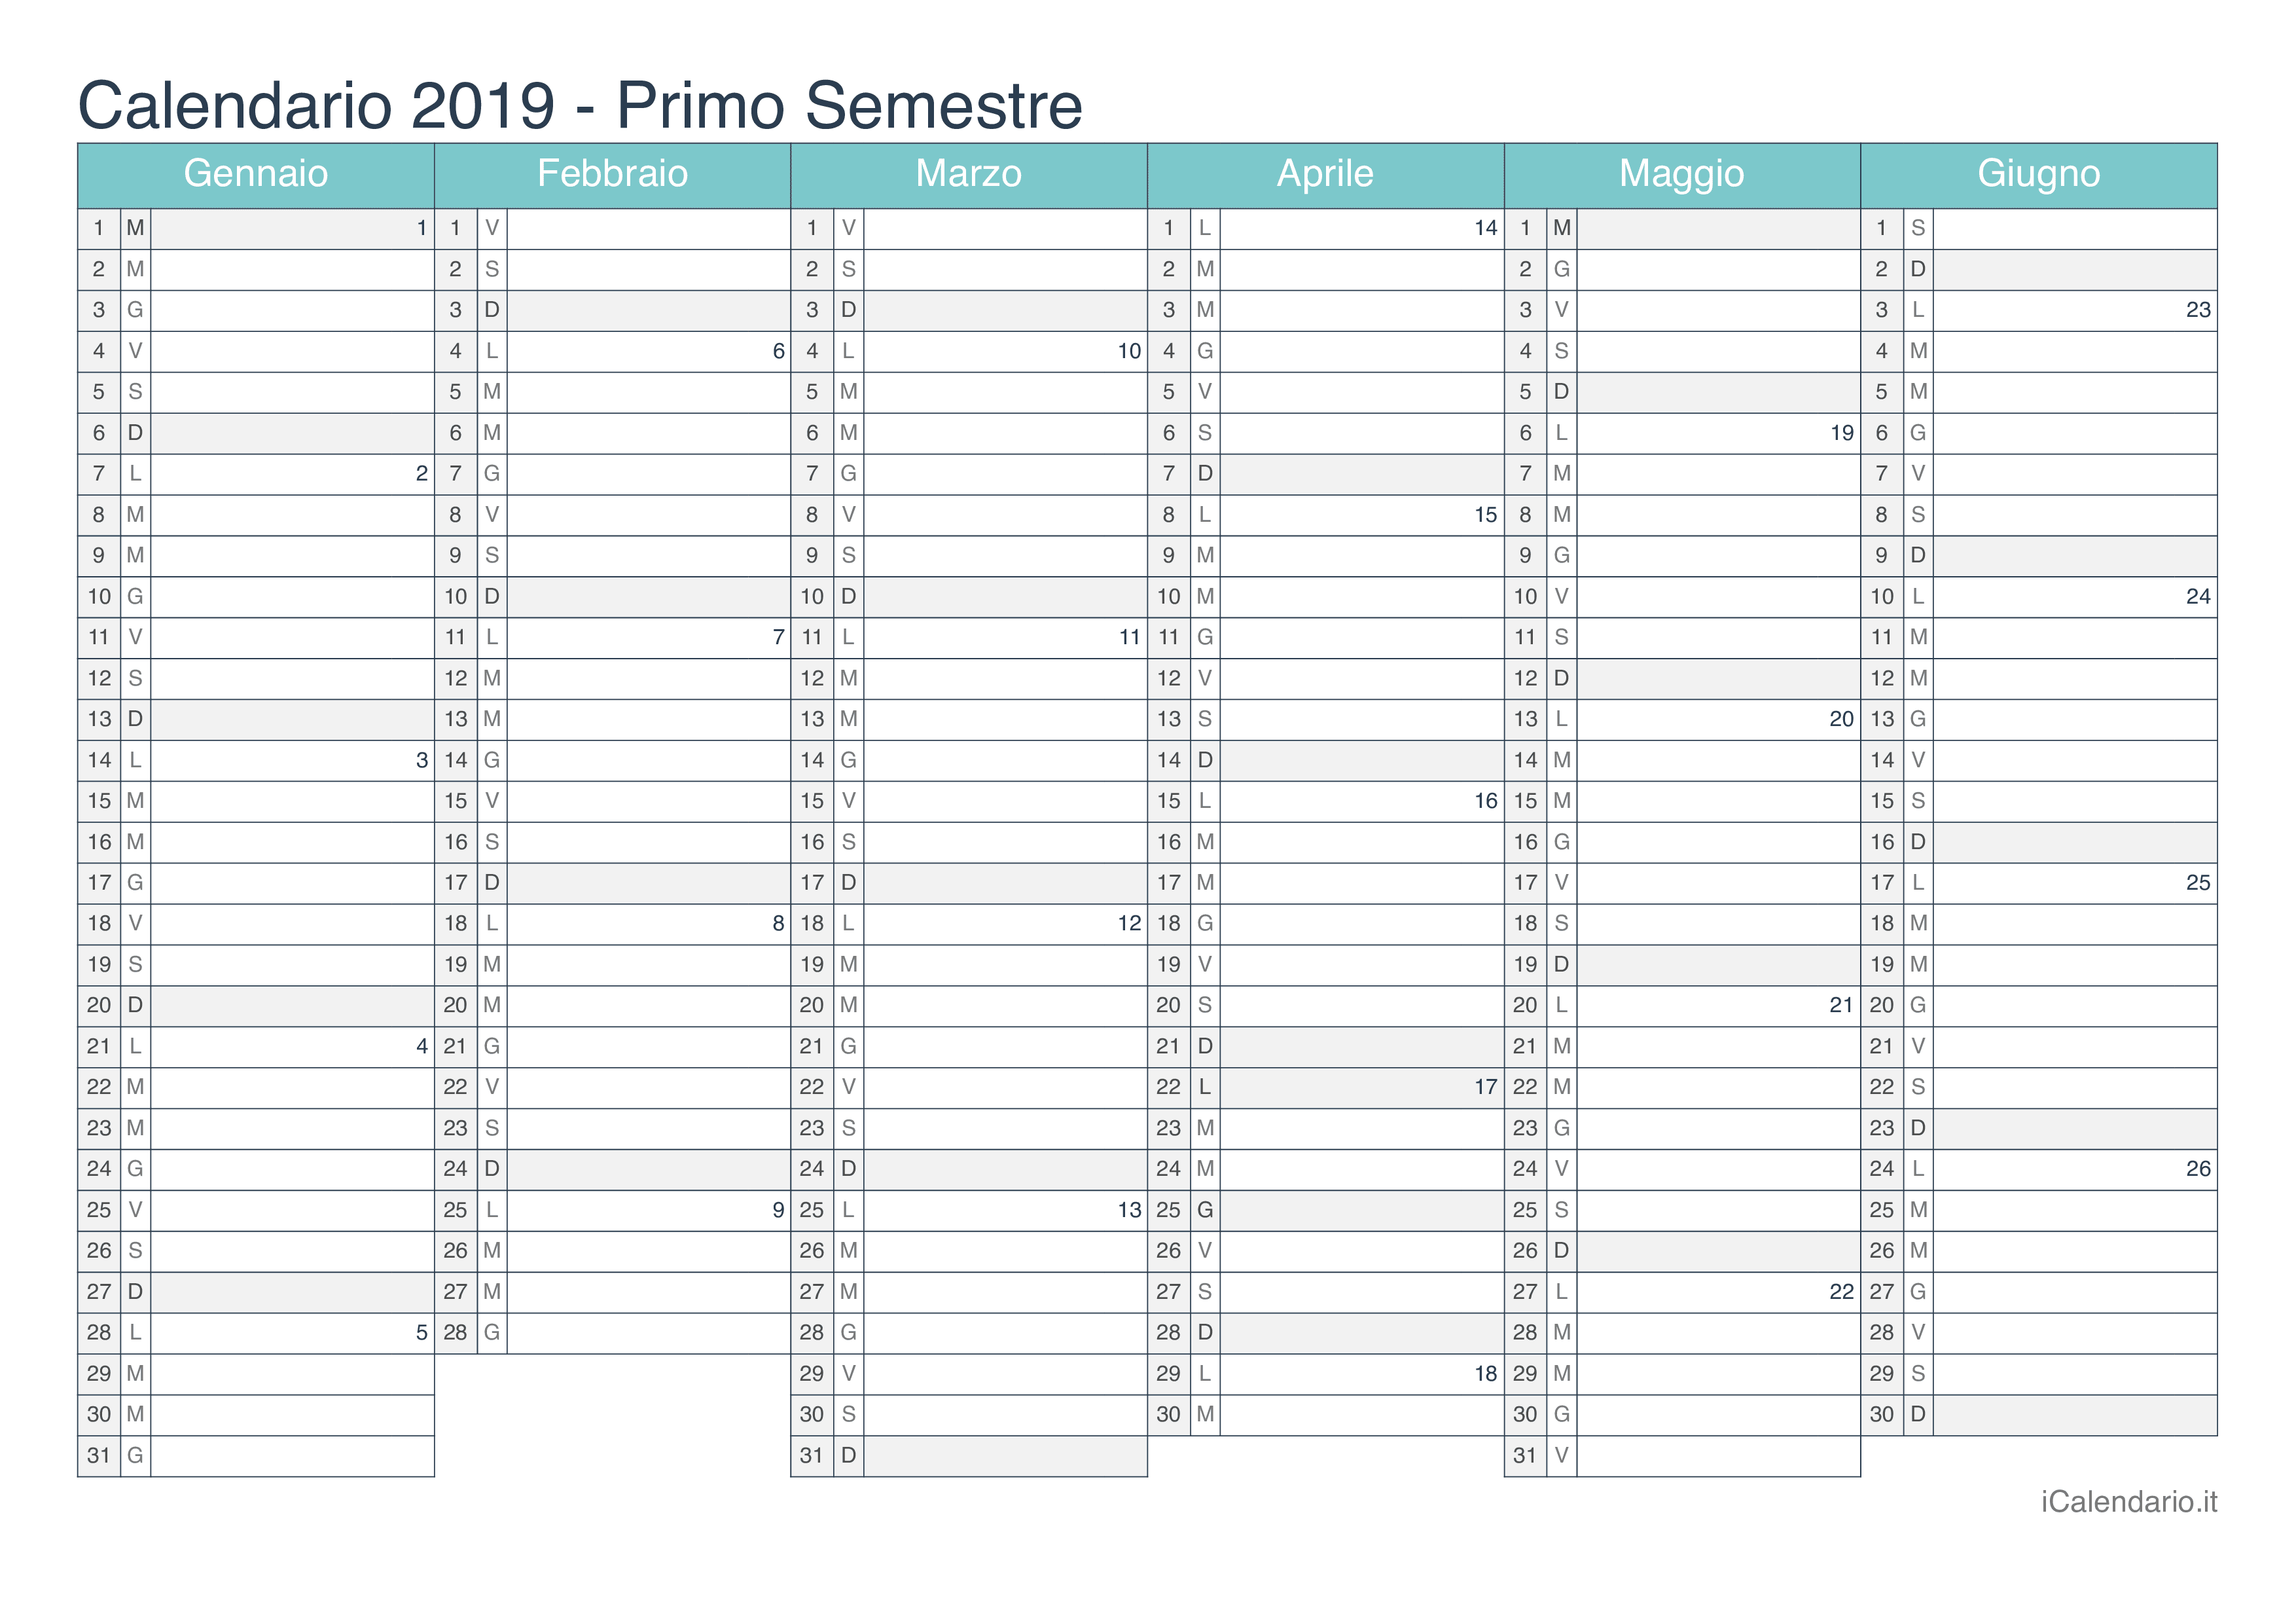 Calendario semestrale con numeri delle settimane 2019 - Turchese